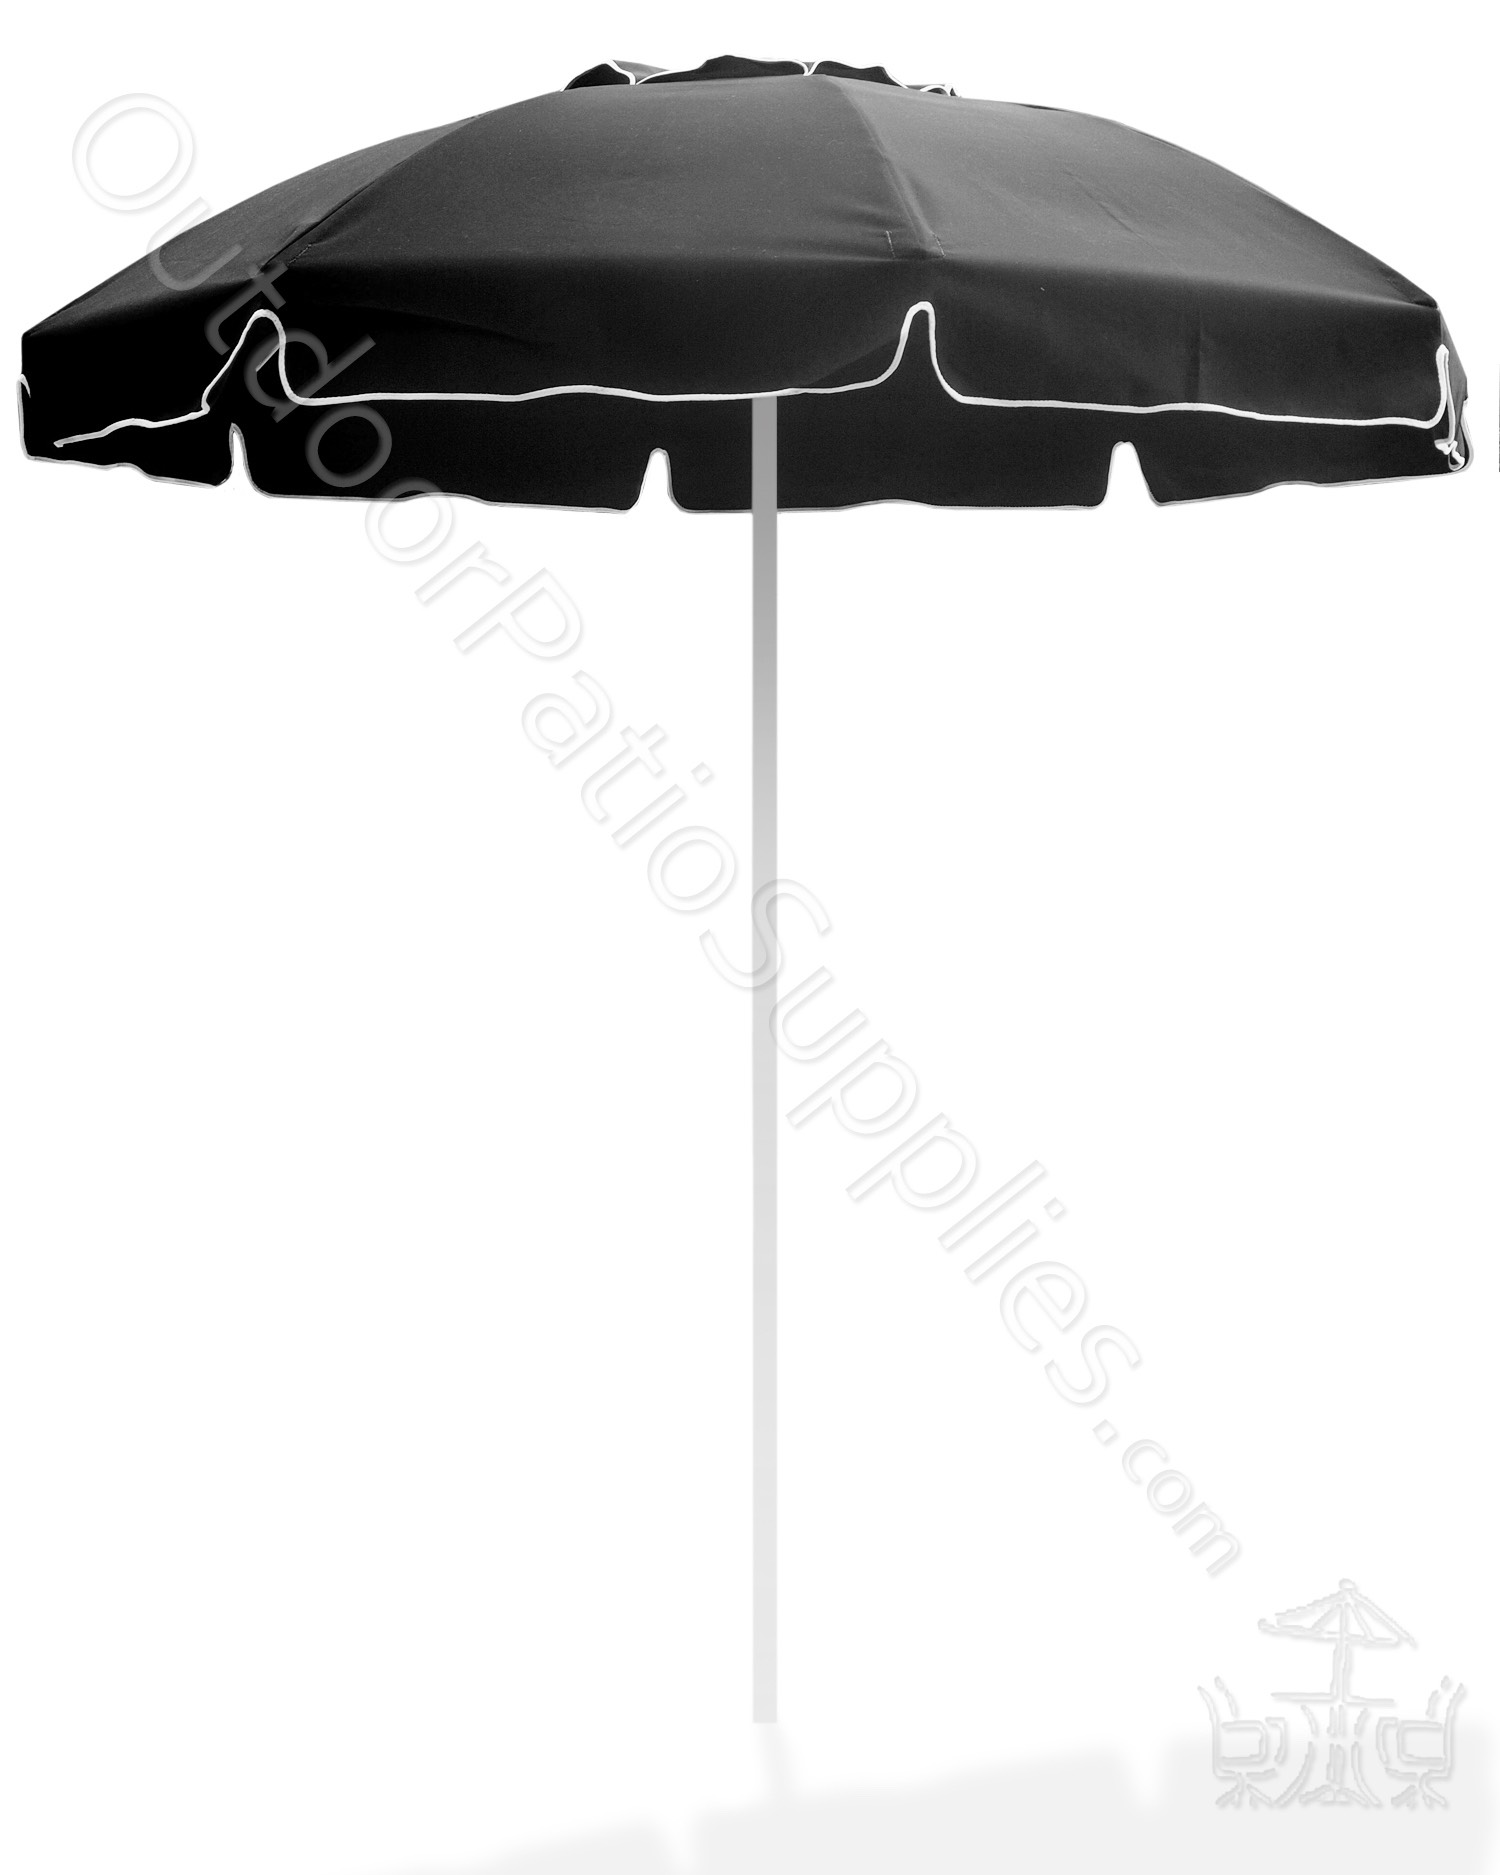 Bal Harbor umbrella